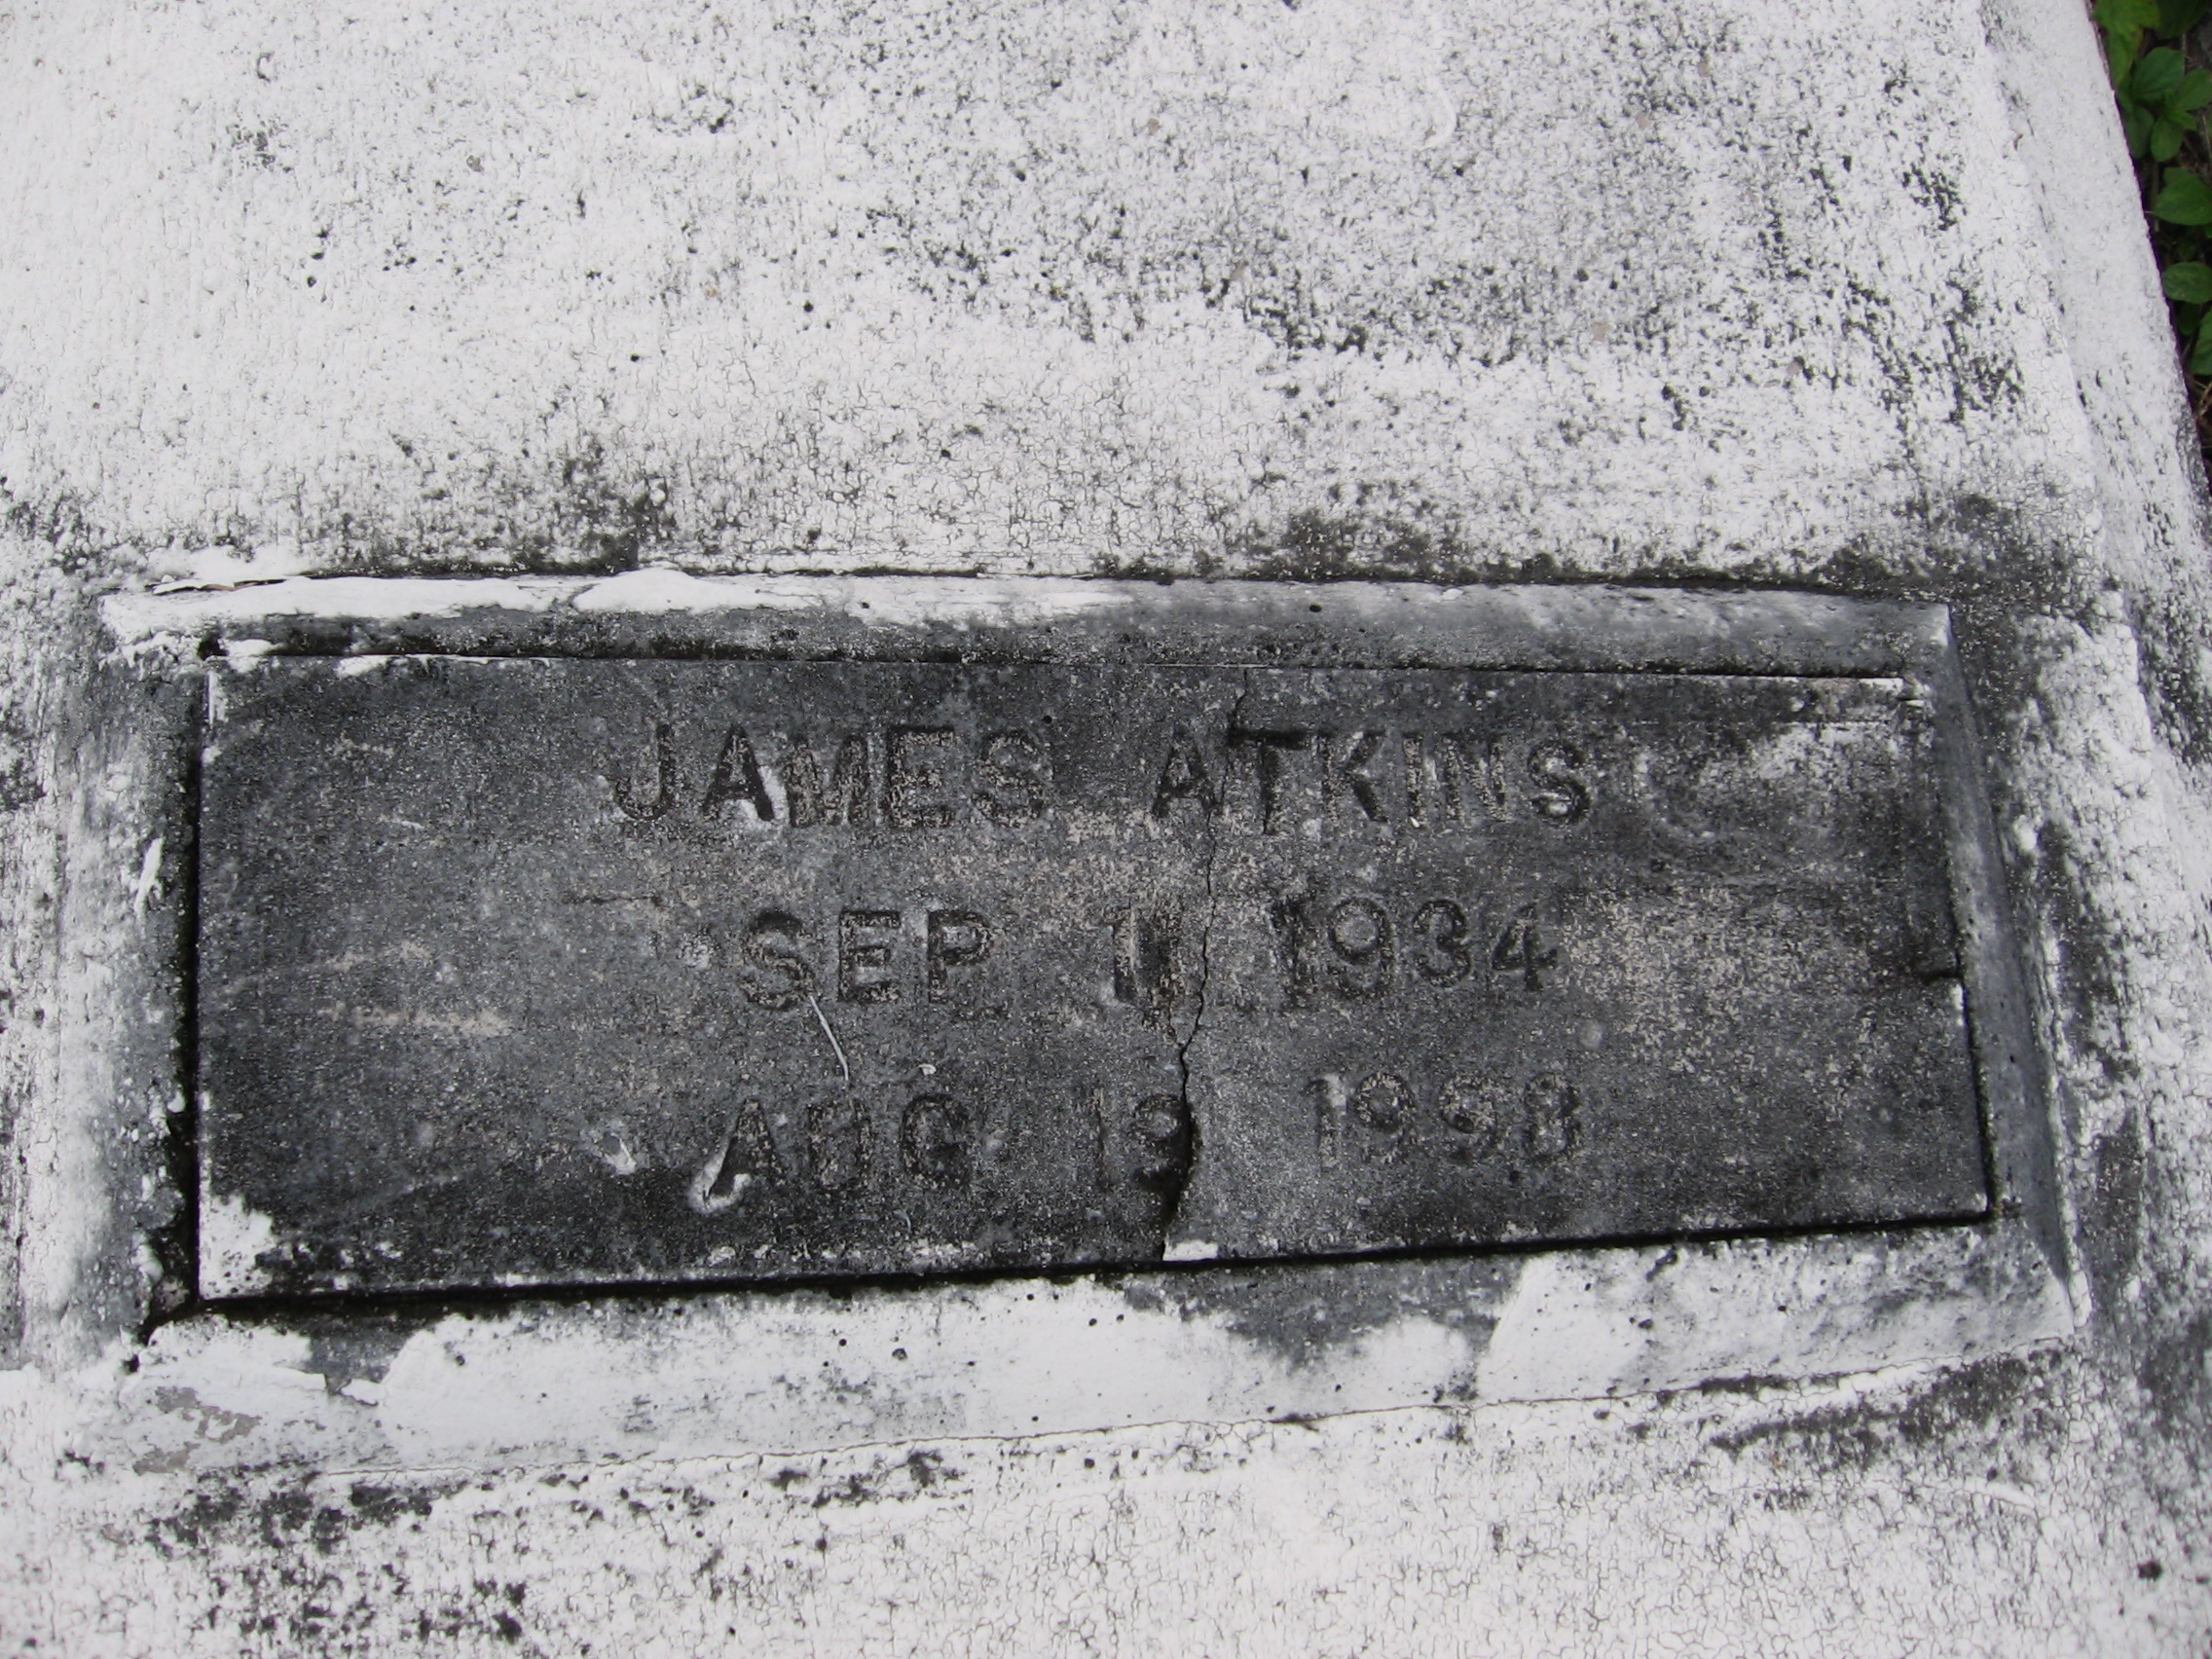 James Atkins, Jr